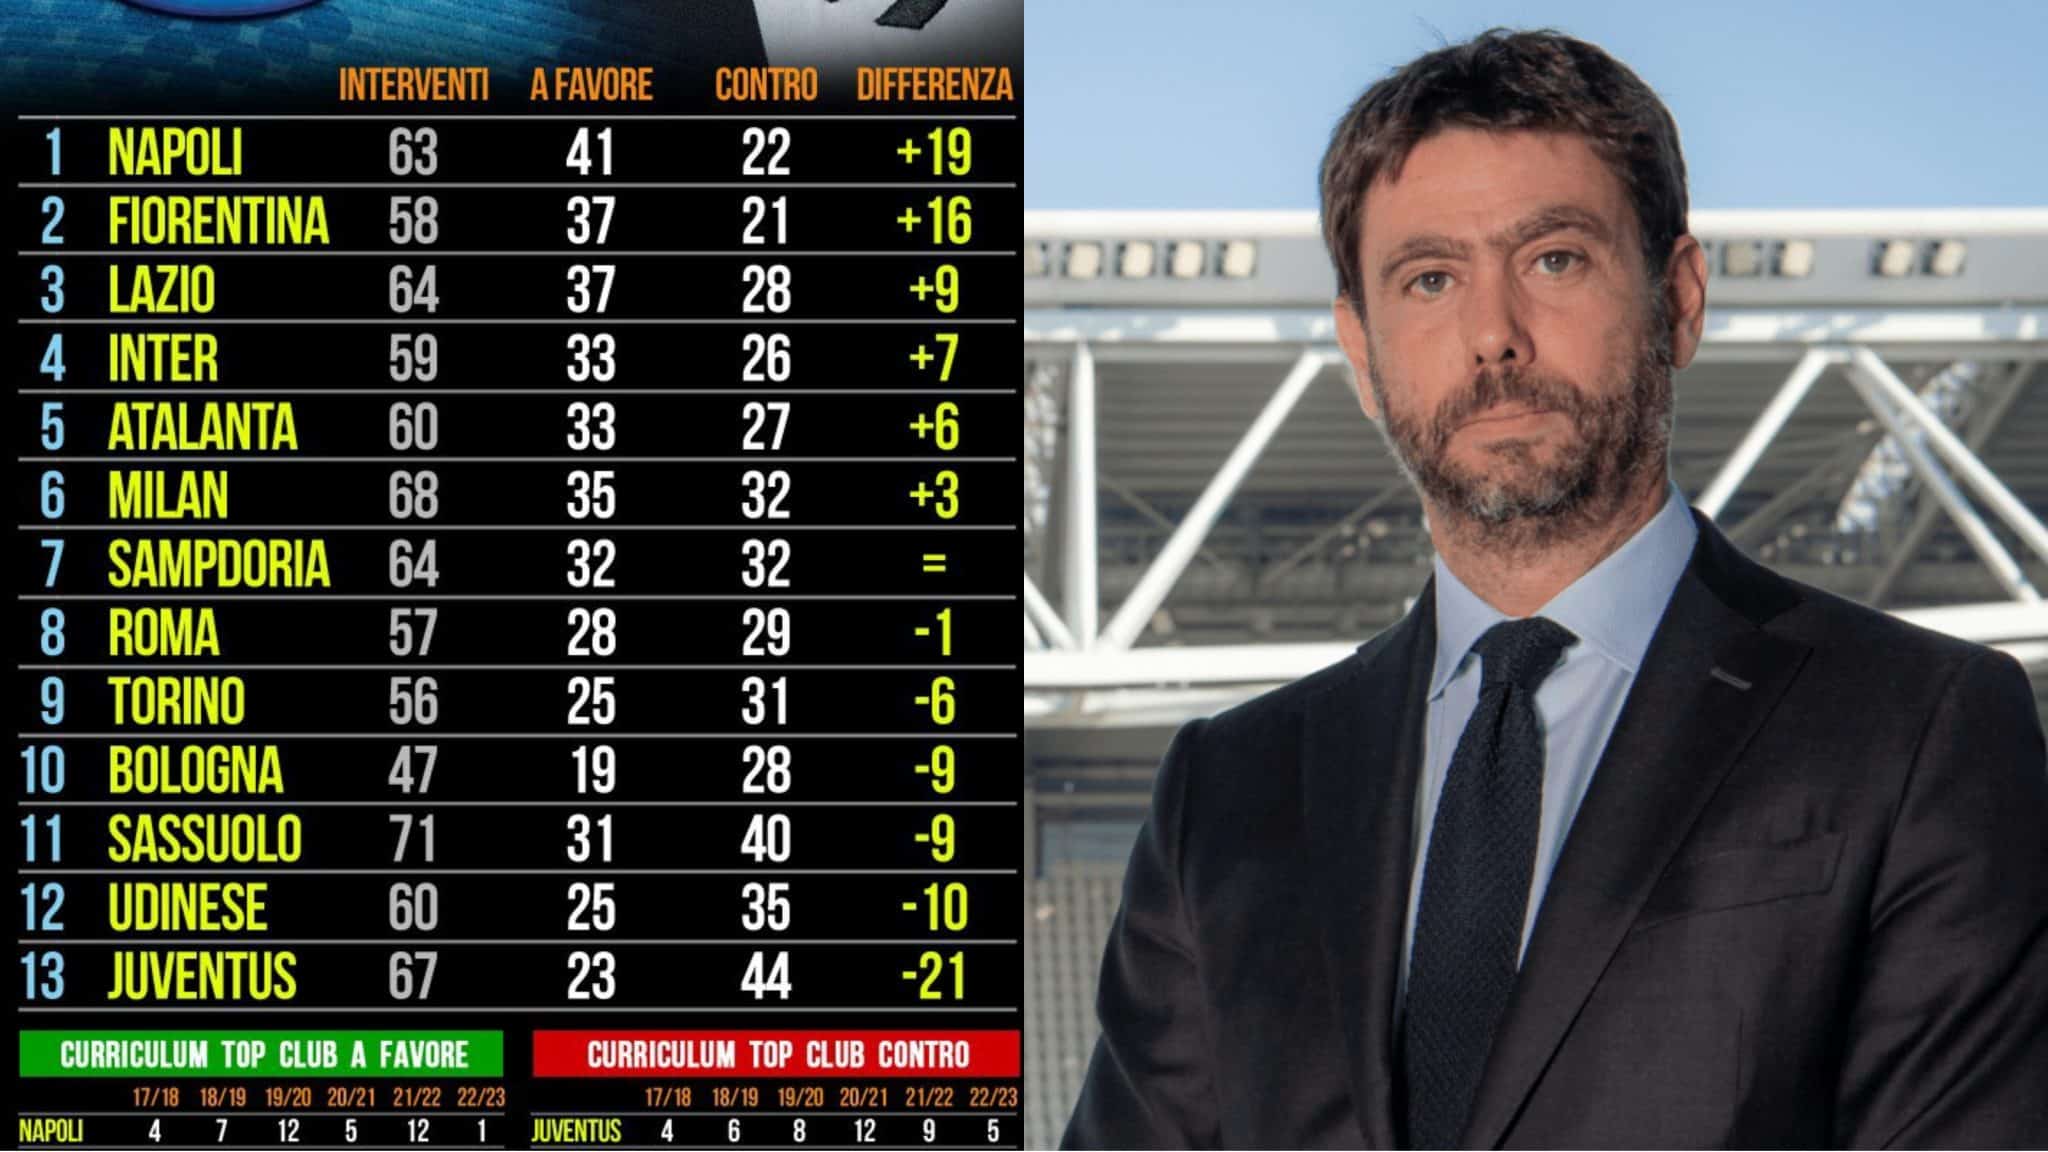 Sans le Var, la Juventus aurait été la plus favorisée par les arbitres.  La Fiorentina et Naples les plus sauvés